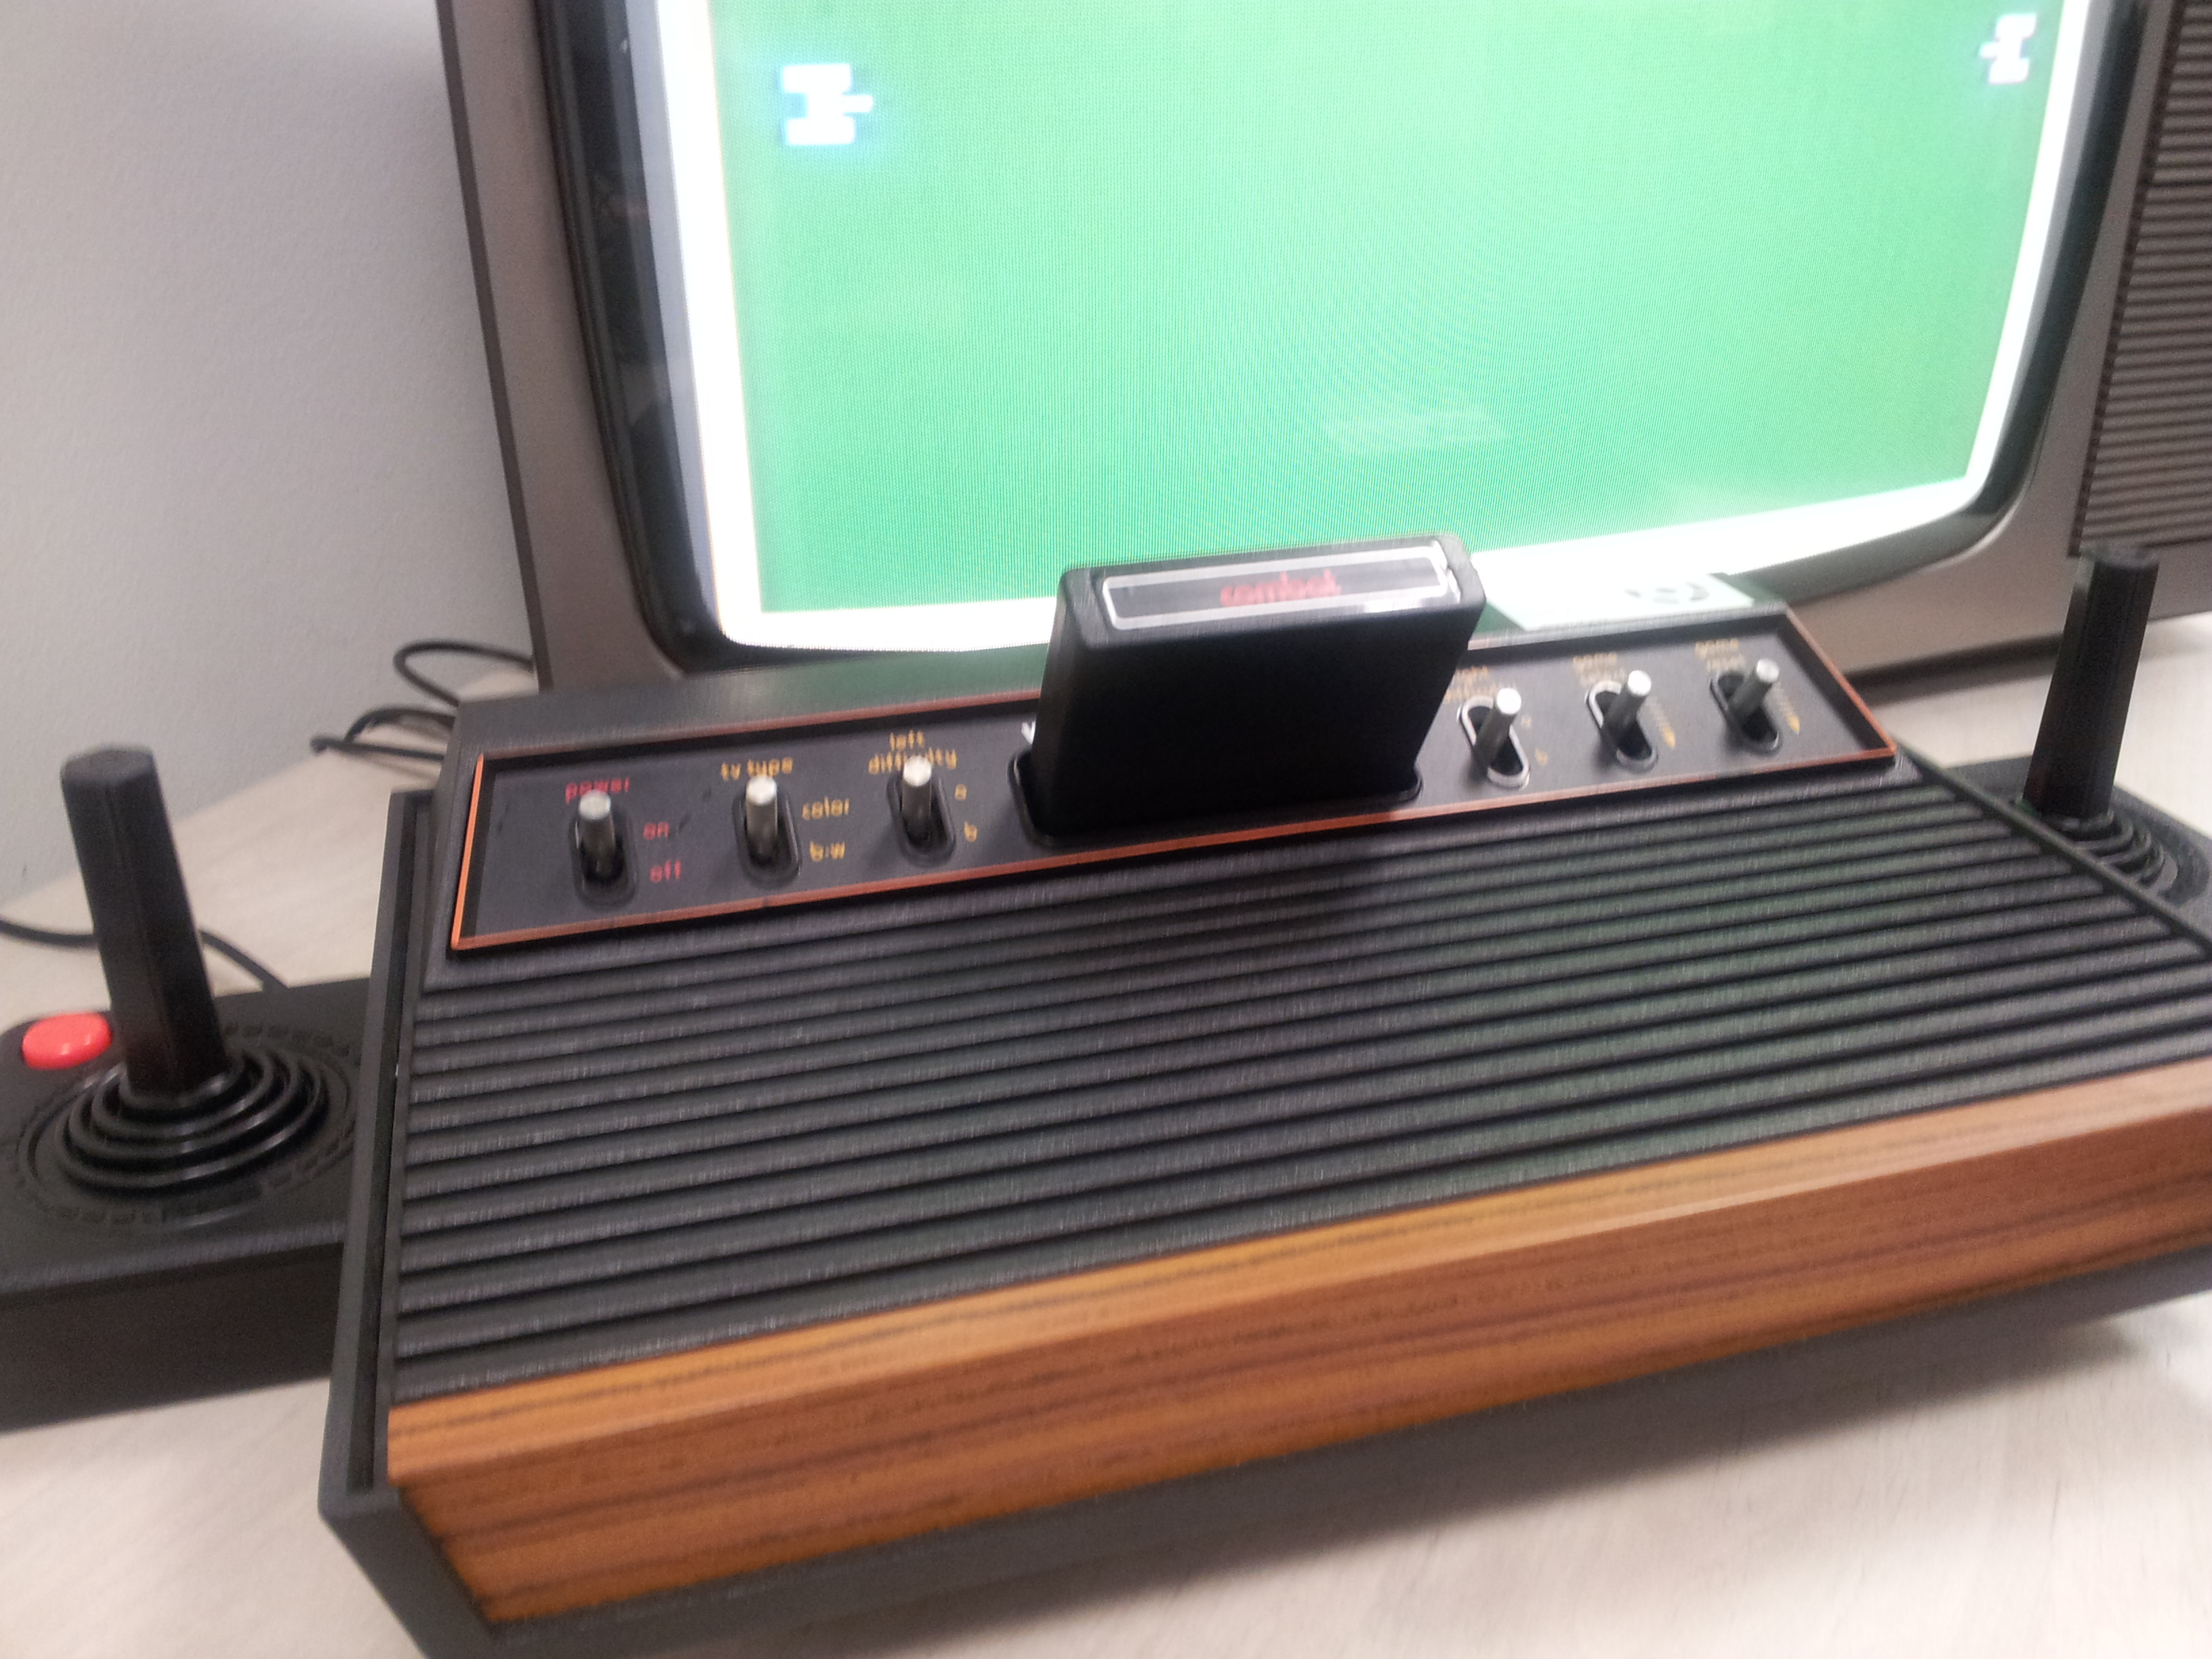 Первая консольная игра. Приставка Атари 2600. Игровая консоль Atari 2600. Консоль Атари. Игровая консоль Atari 2600 1977 года.